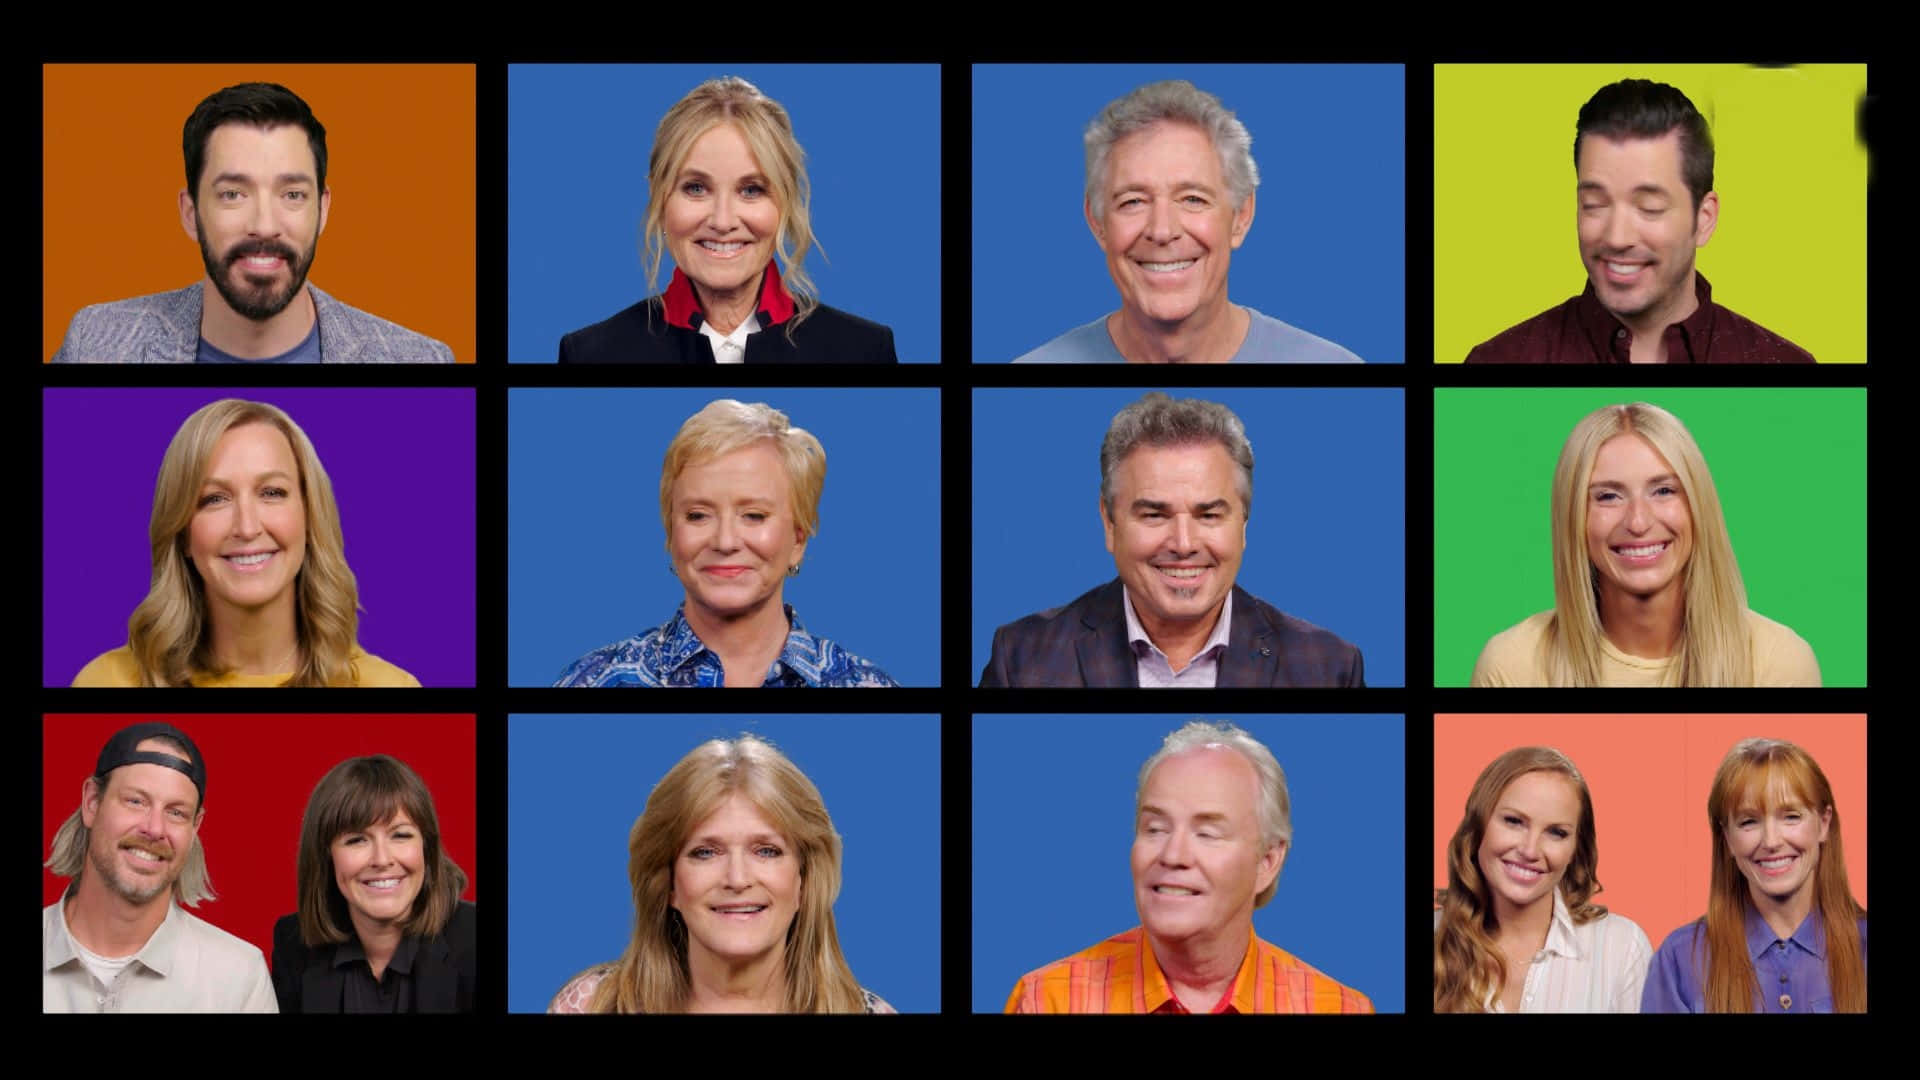 Ungrupo De Personas Está Sonriendo En Diferentes Colores. Fondo de pantalla